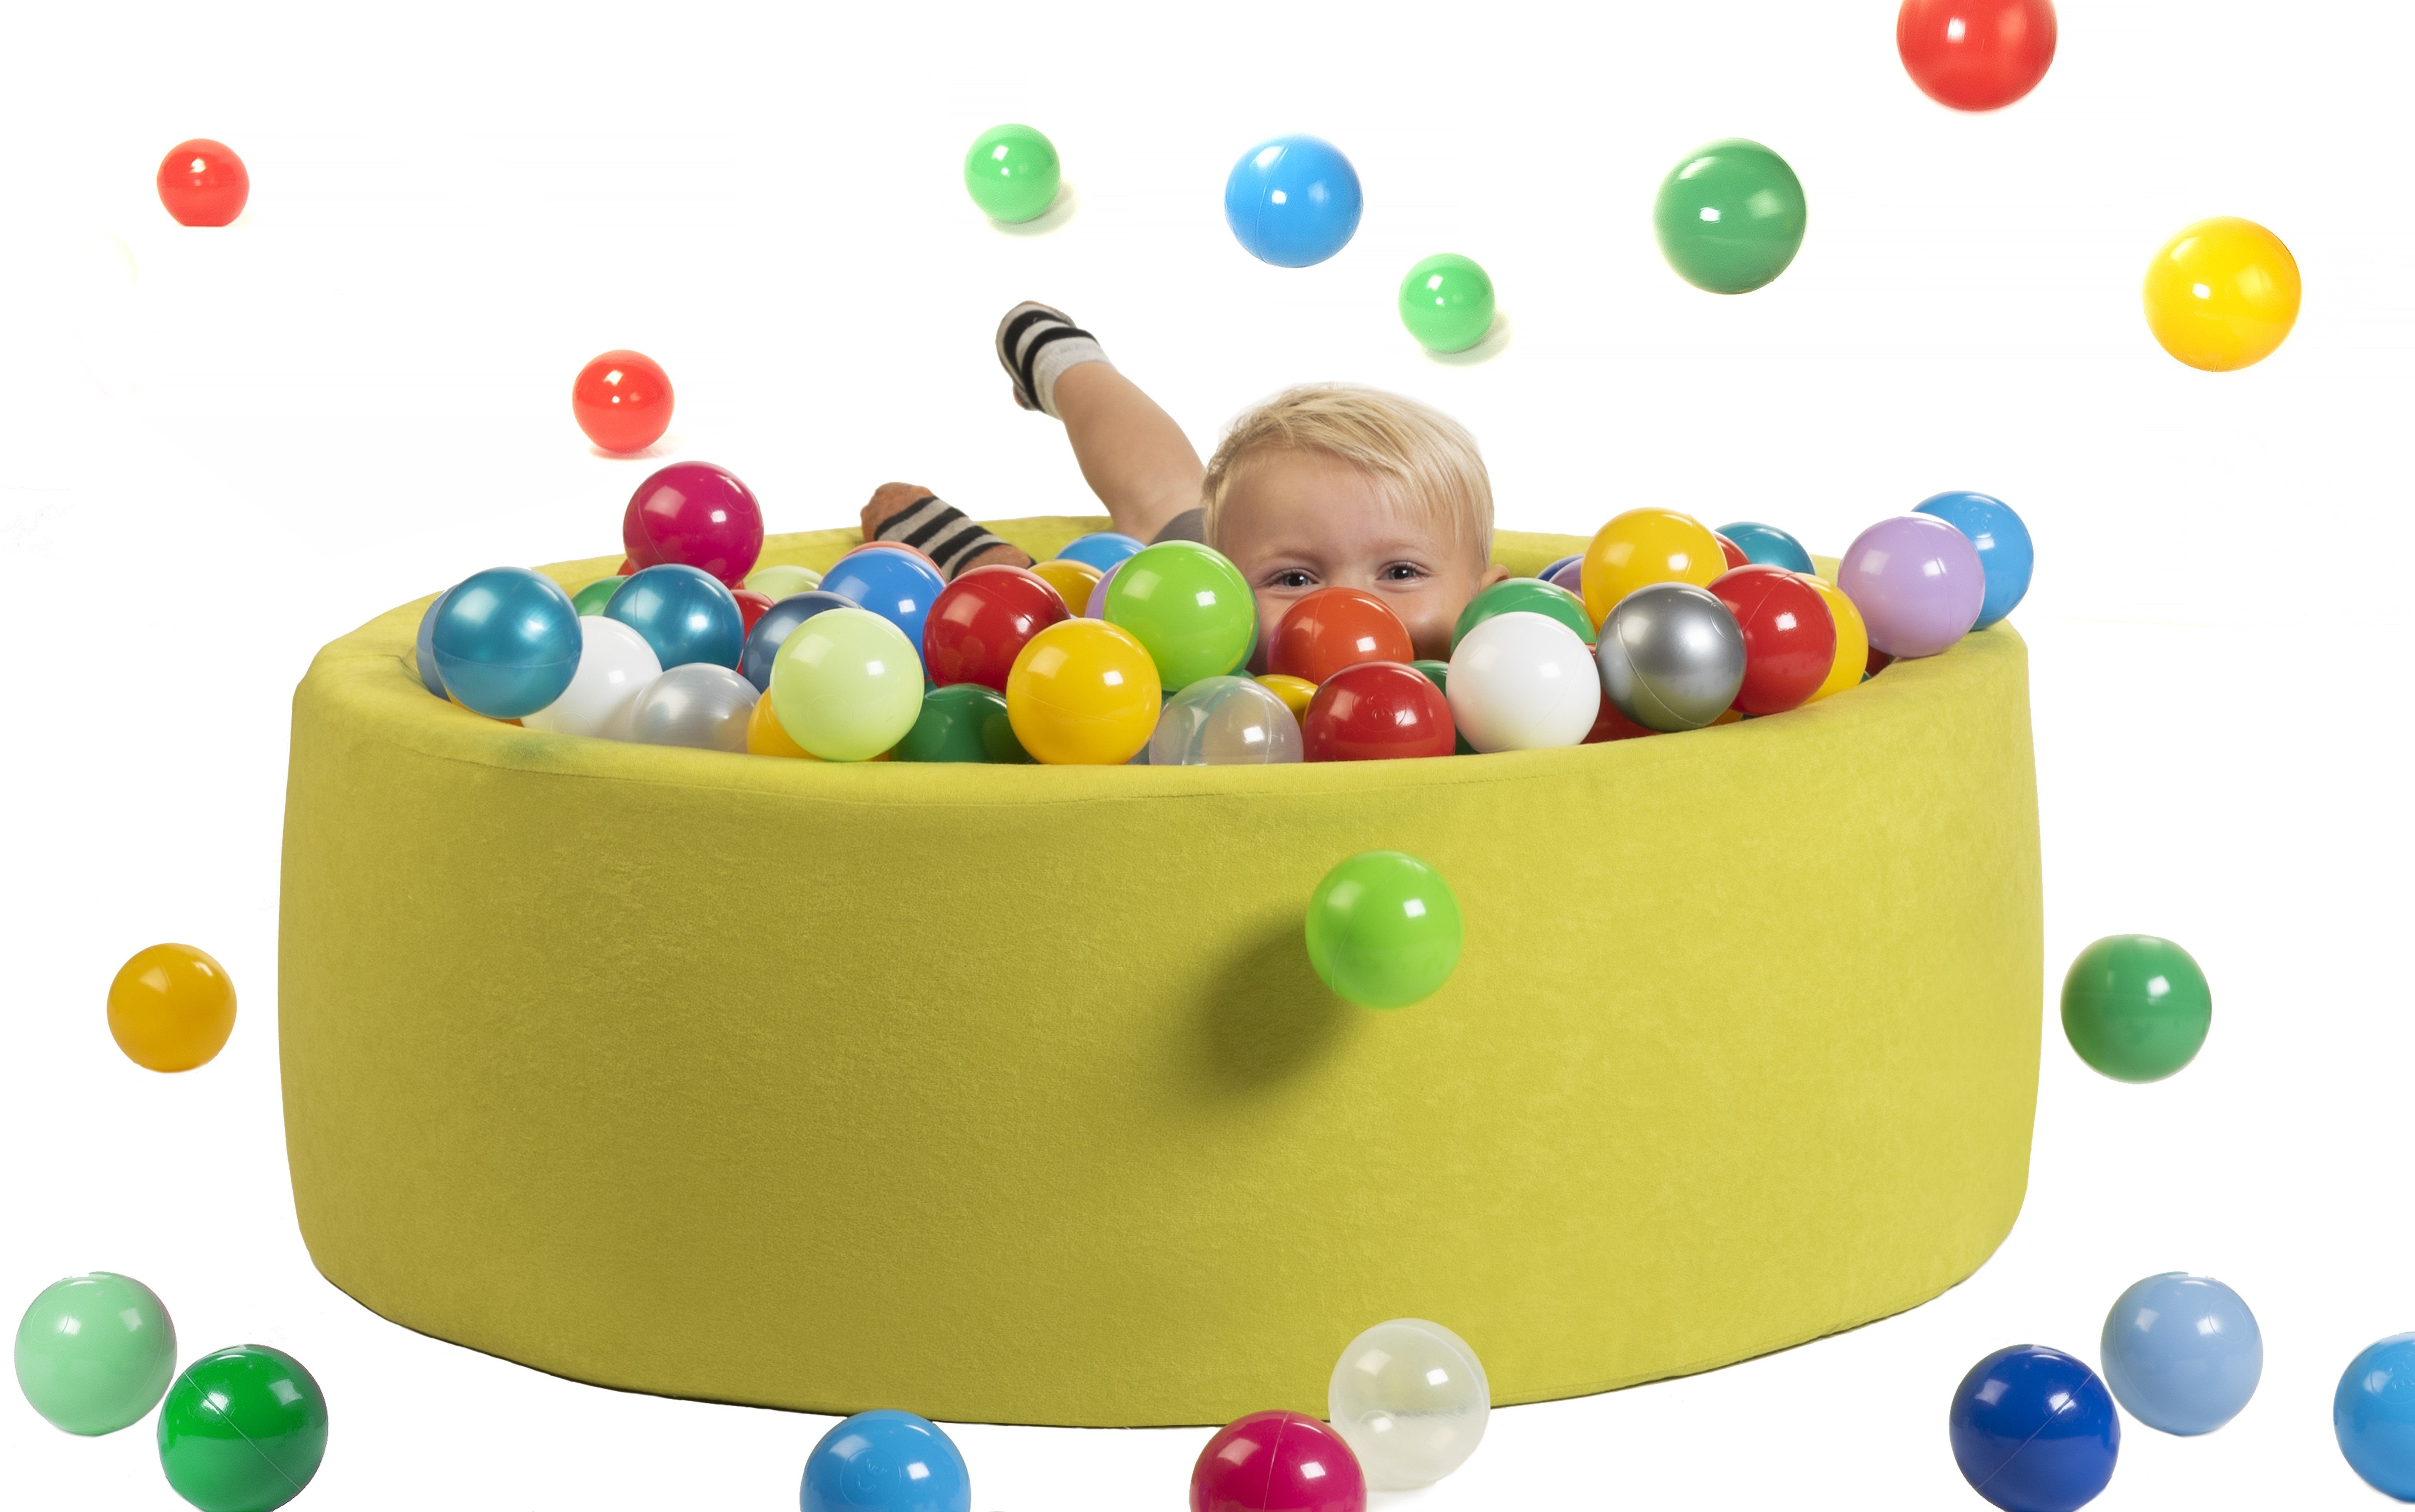 sunnypillow Bällebad-Bälle »sunnypillow Bällebad für Baby Kinder mit  200/400 bunten Bällen ∅ 7cm Bällepool 90∅ x H 30cm« online kaufen | OTTO